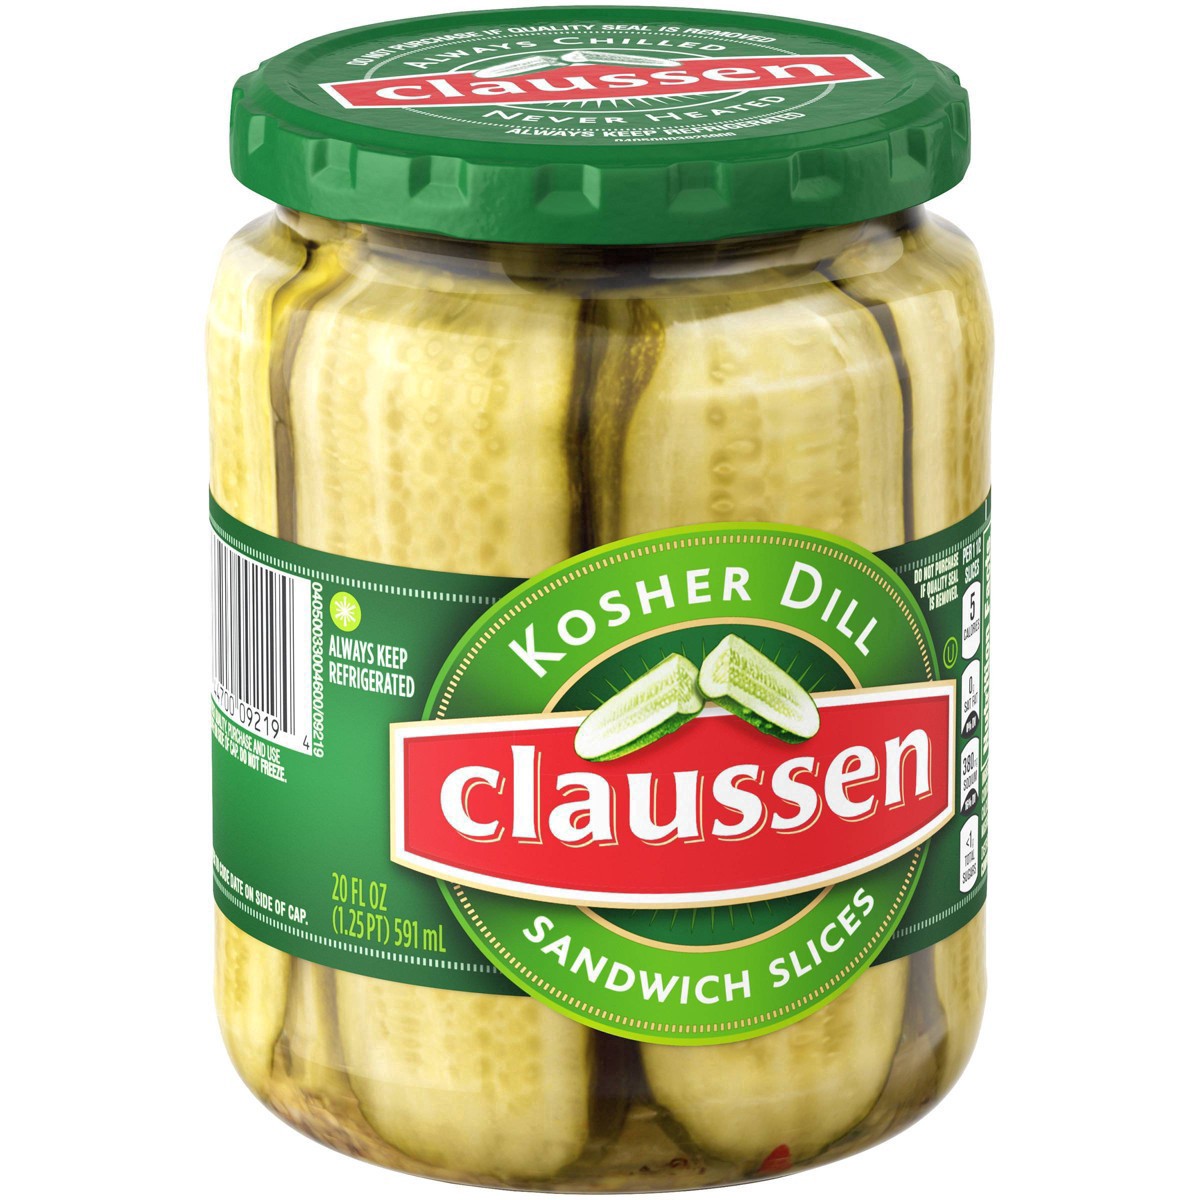 slide 57 of 144, Claussen Kosher Dill Pickle Sandwich Slices, 20 fl. oz. Jar, 20 fl oz